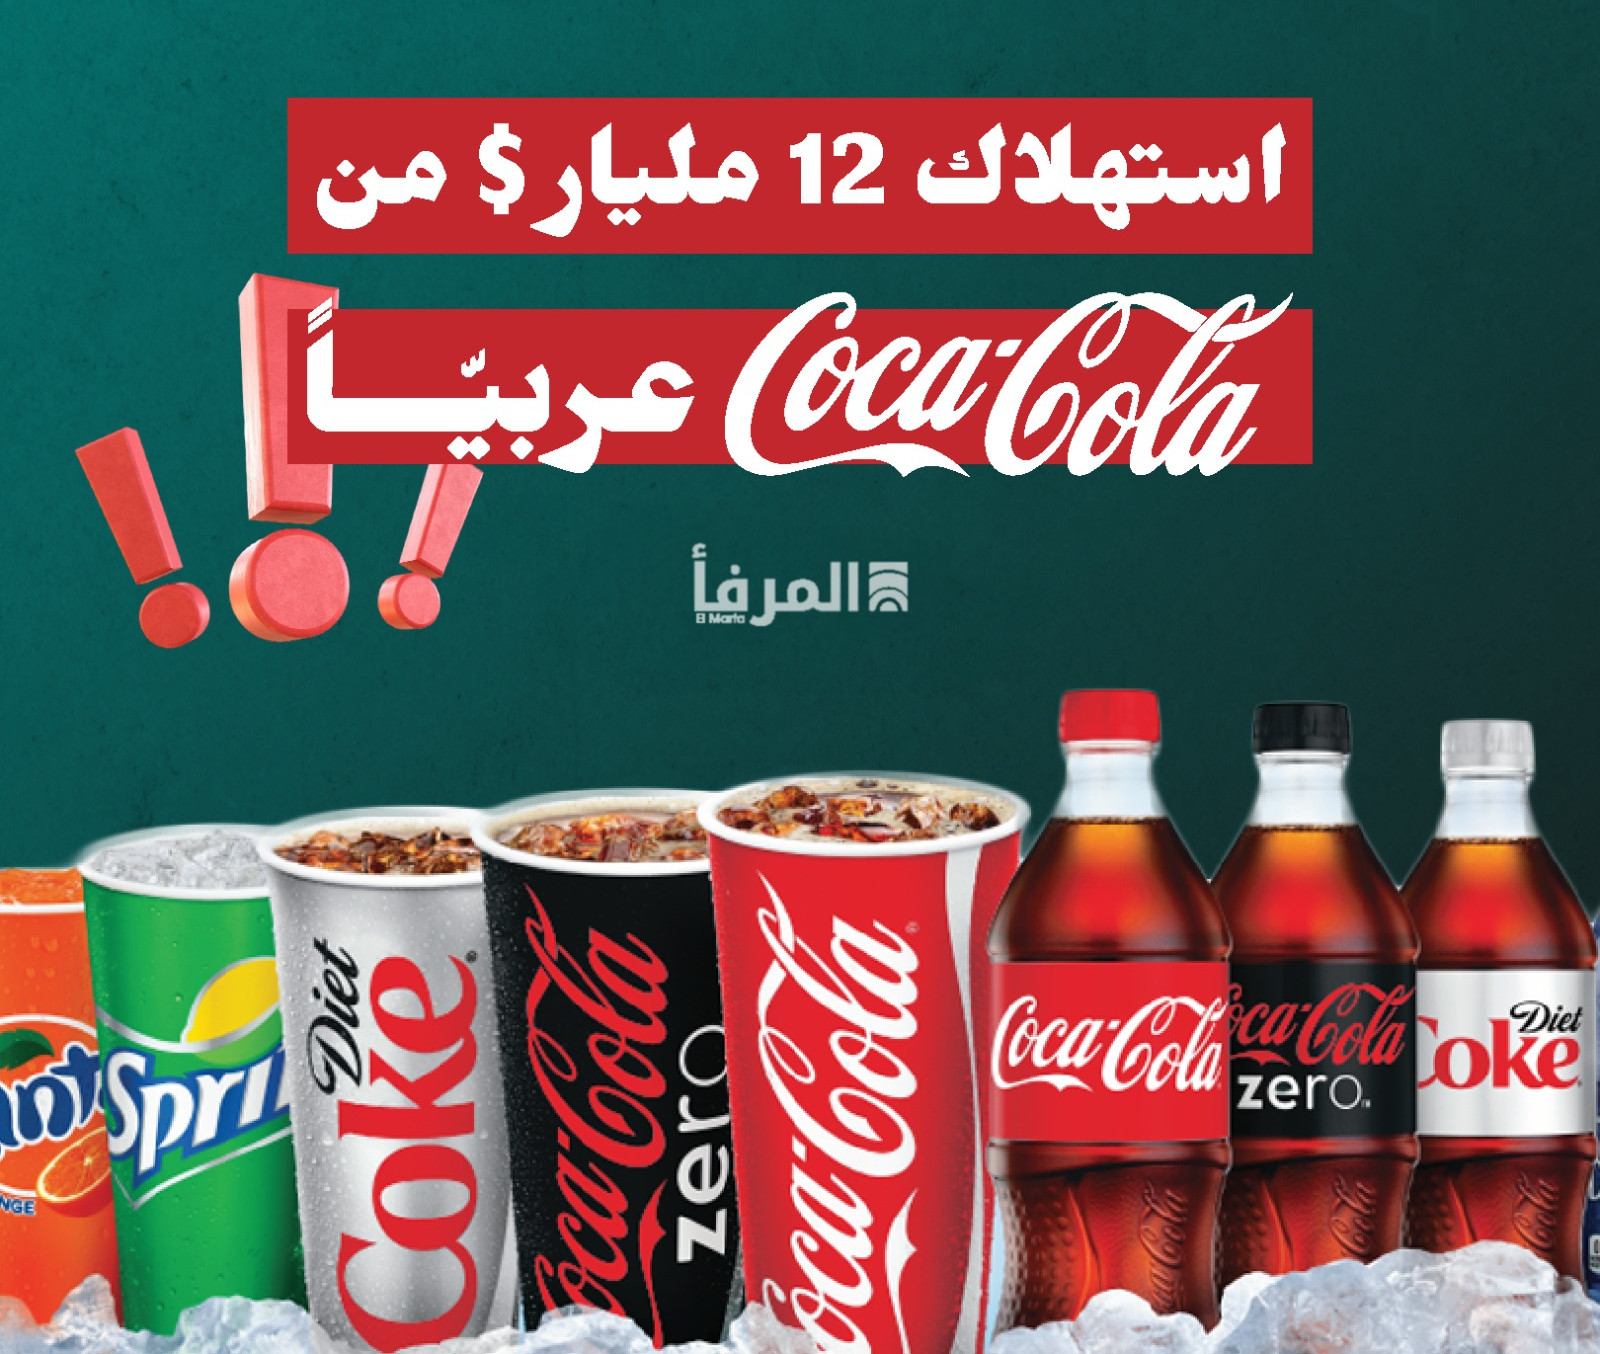 العالم العربيّ يستهلك سنويًّا، 12 مليار دولار من الكوكاكولا! 